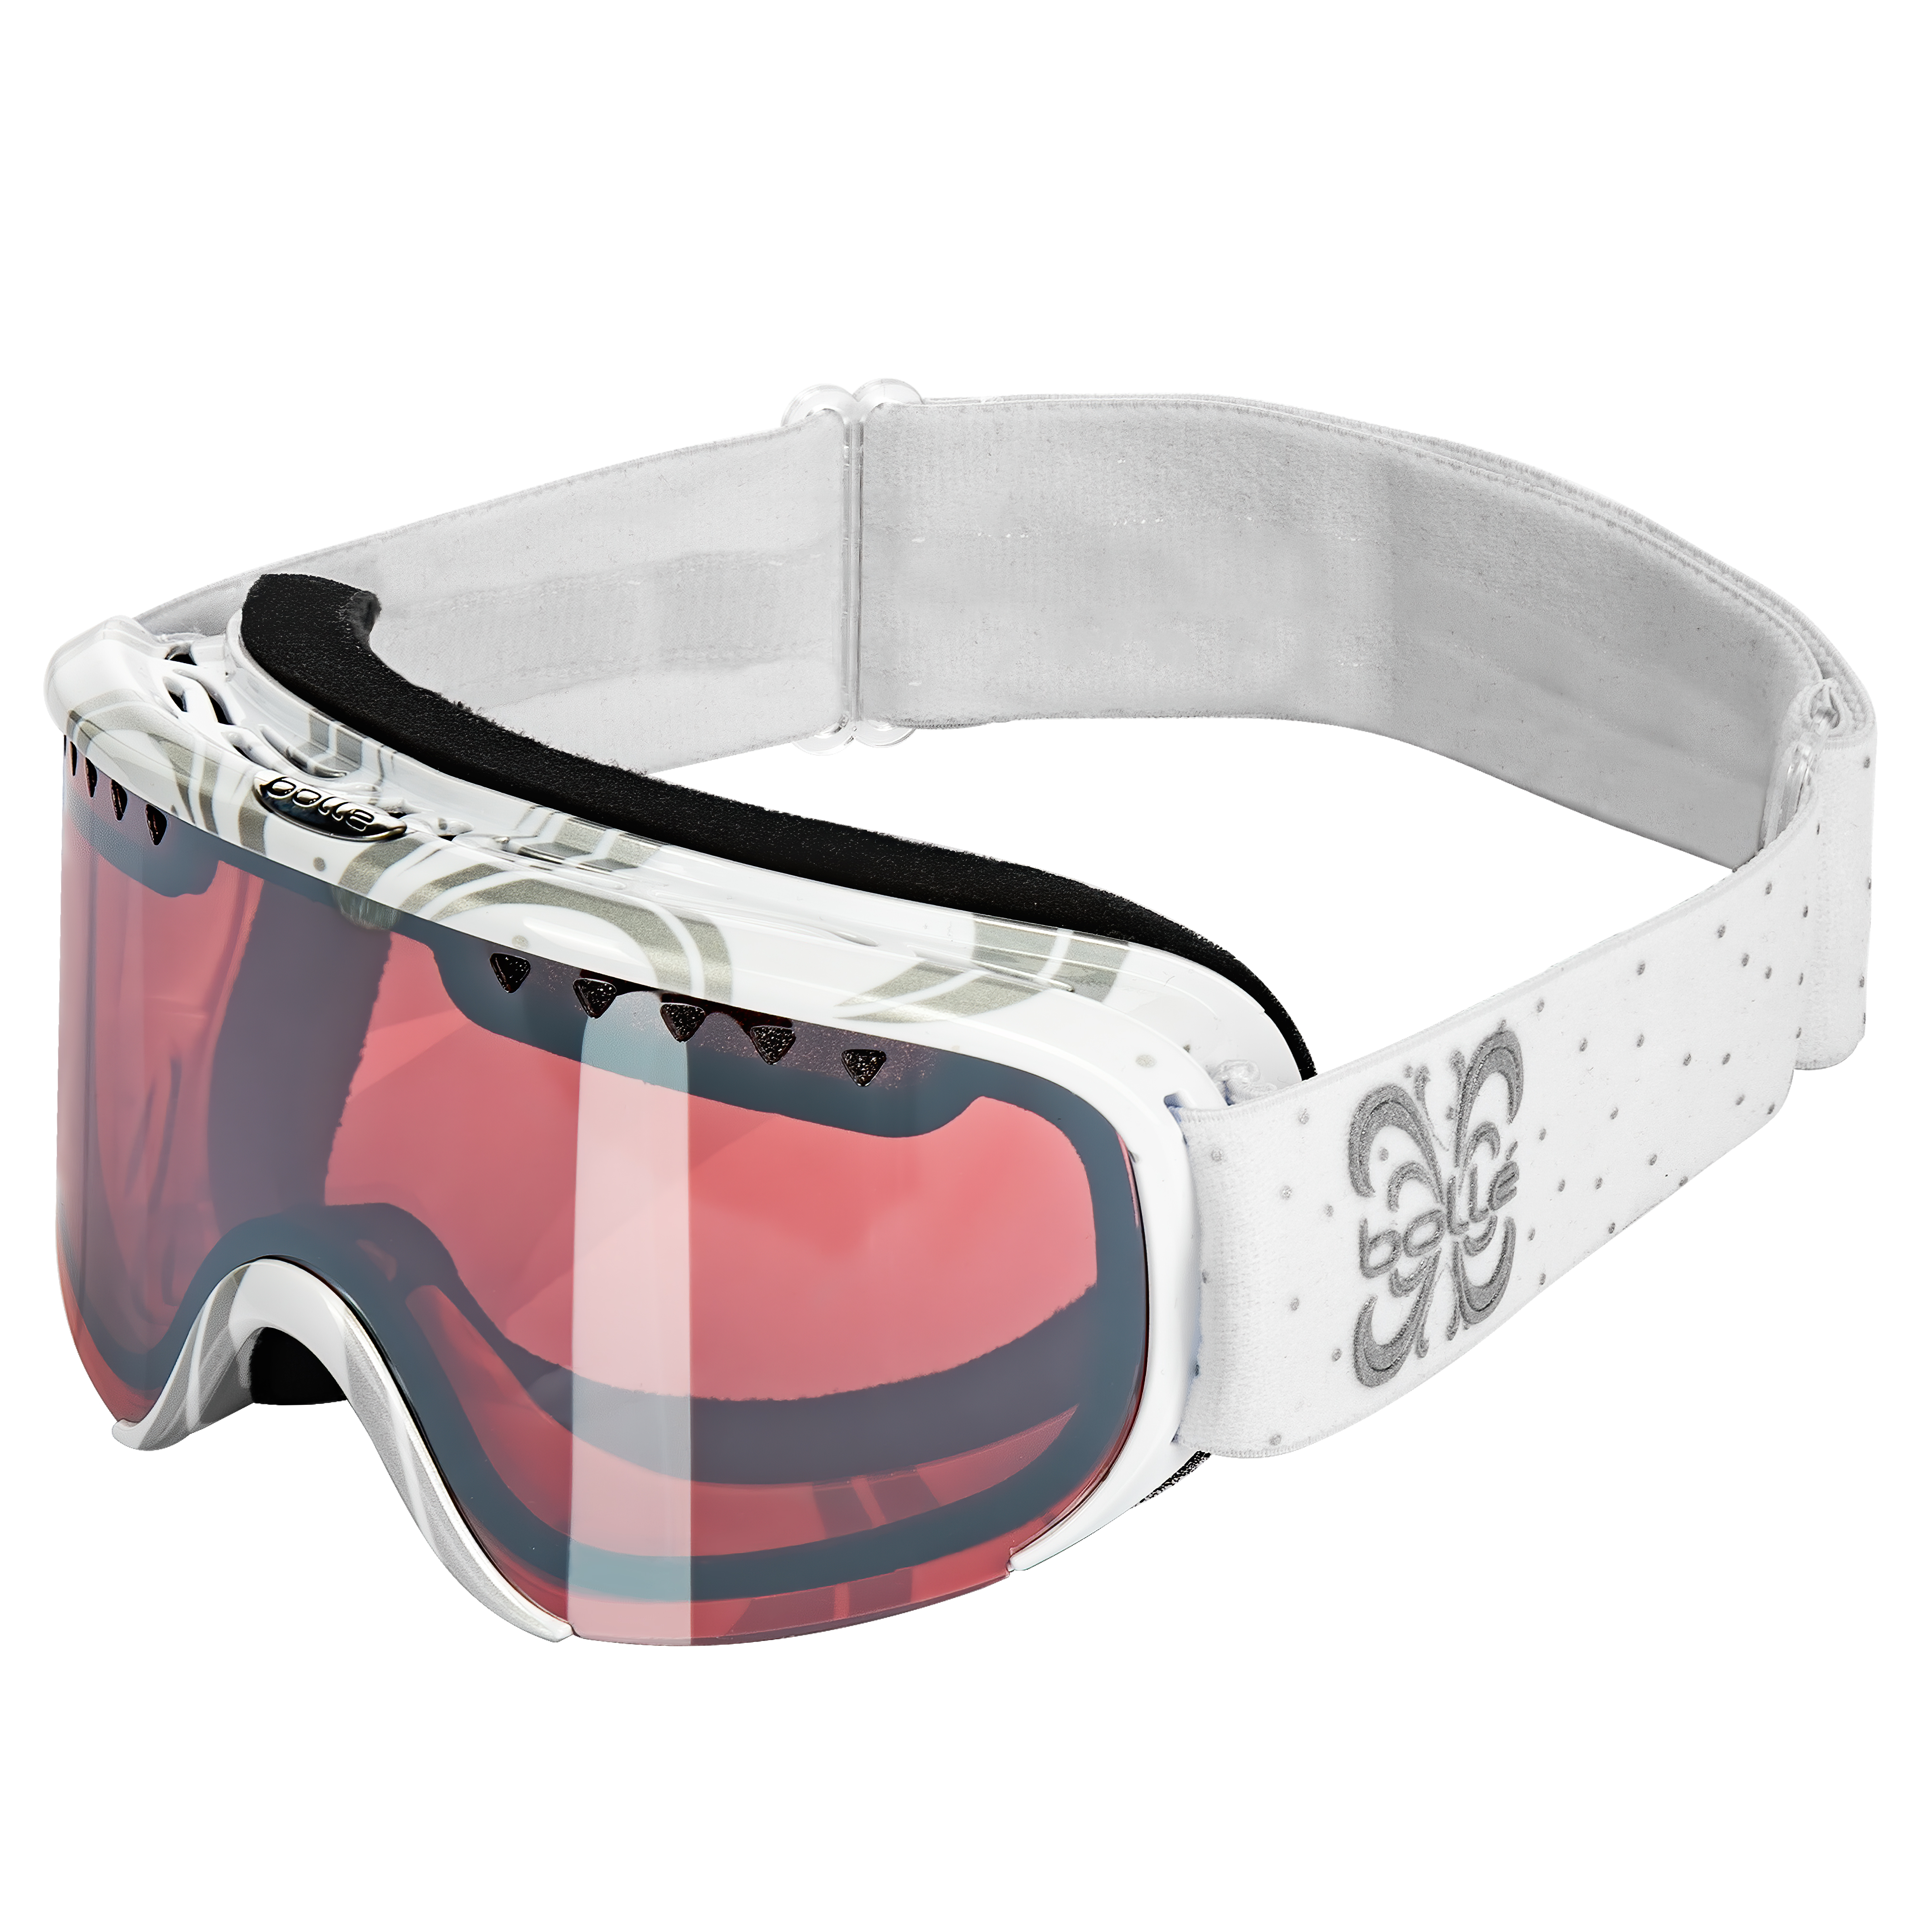 Характеристики горнолыжные маски с защитой от запотевания Bolle Scarlett Shiny White Night Vermillon Gun